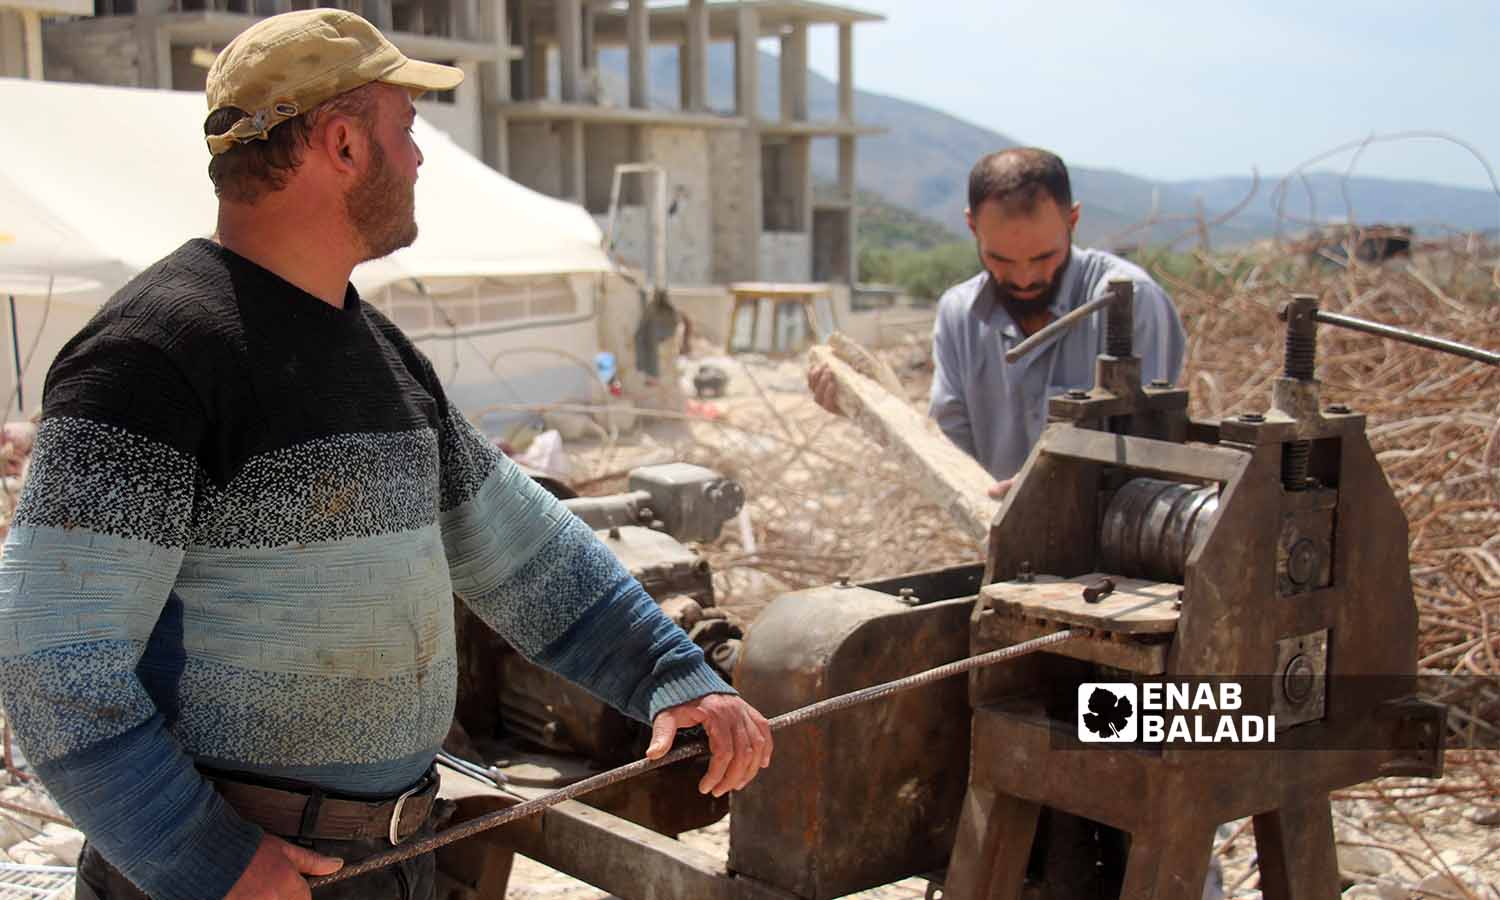 عمال يقومون بمعالجة قضبان الحديد المستخرجة من ركام الأبنية المدمرة بفعل الزلزال لإعادة تدويرها واستخدامها في سلقين بريف إدلب- 30 نيسان 2023(عنب بلدي- إياد عبد الجواد)